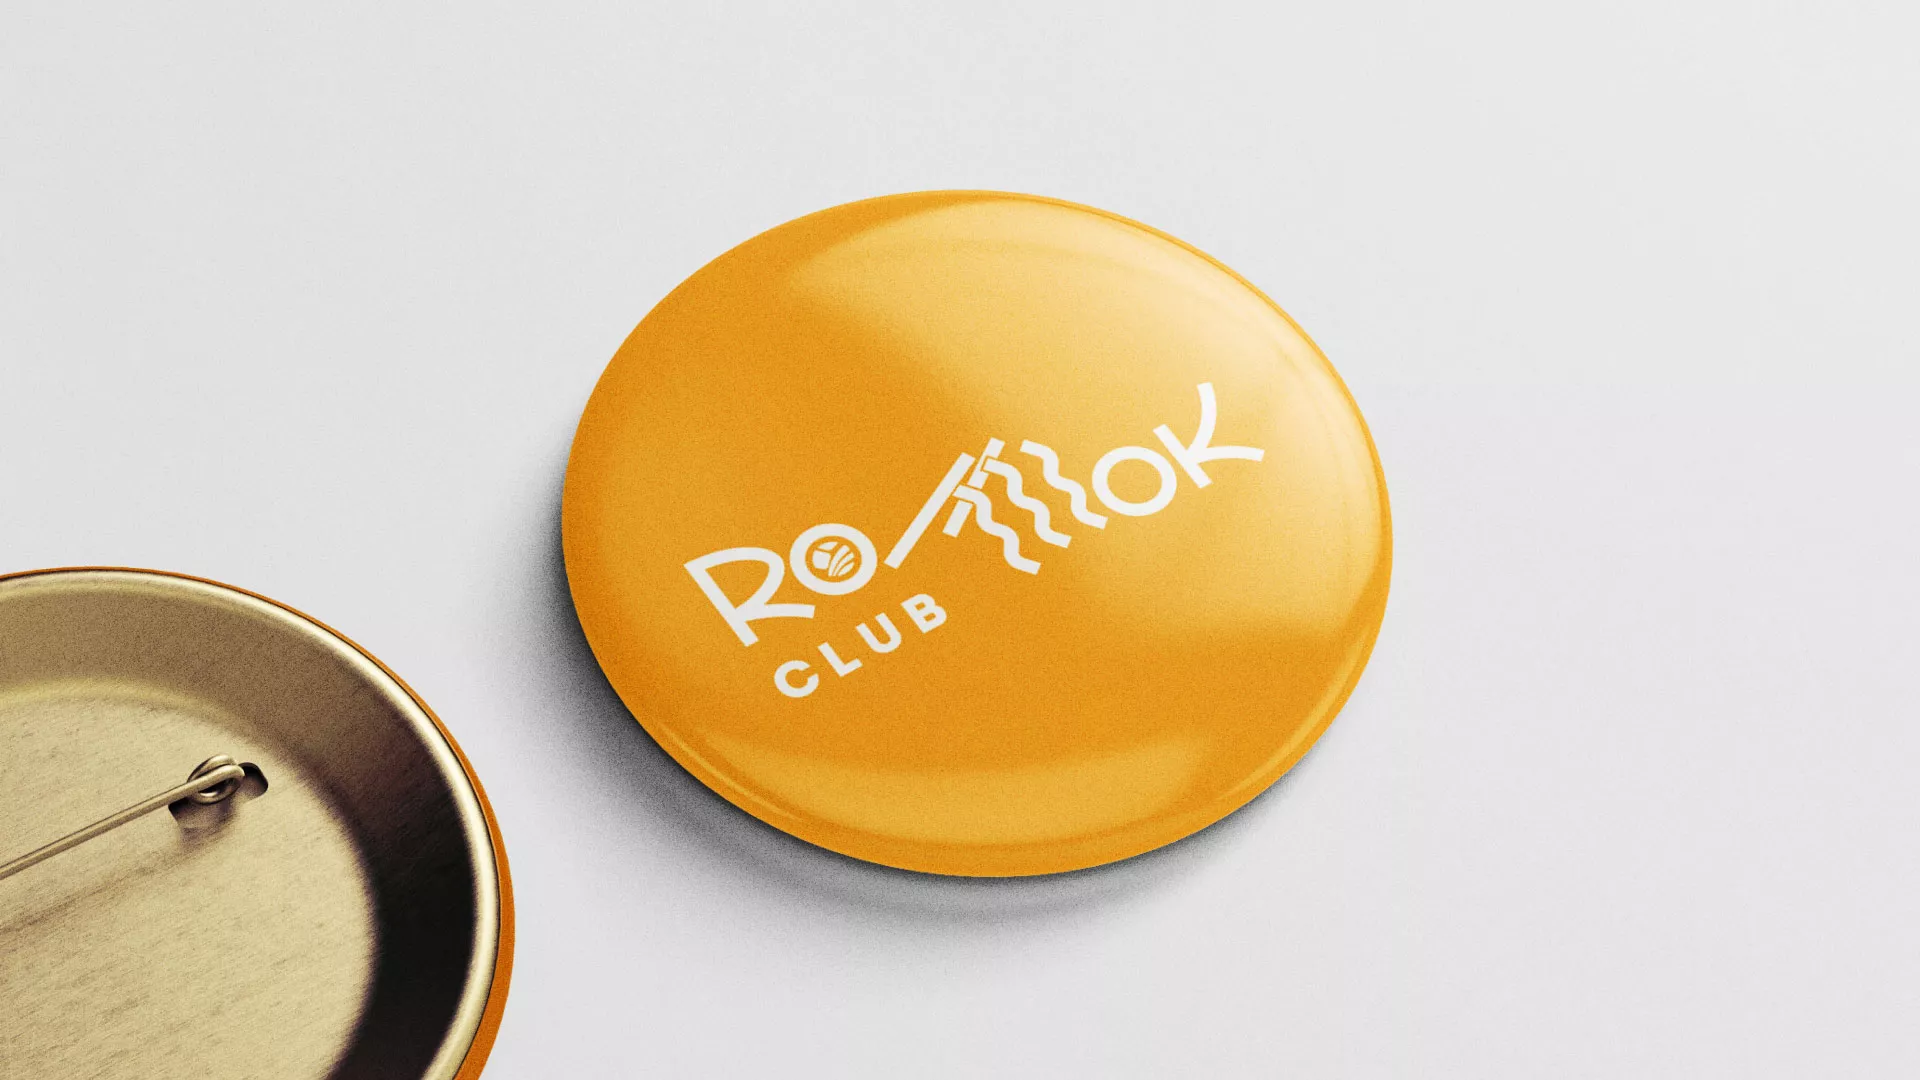 Создание логотипа суши-бара «Roll Wok Club» в Среднеколымске